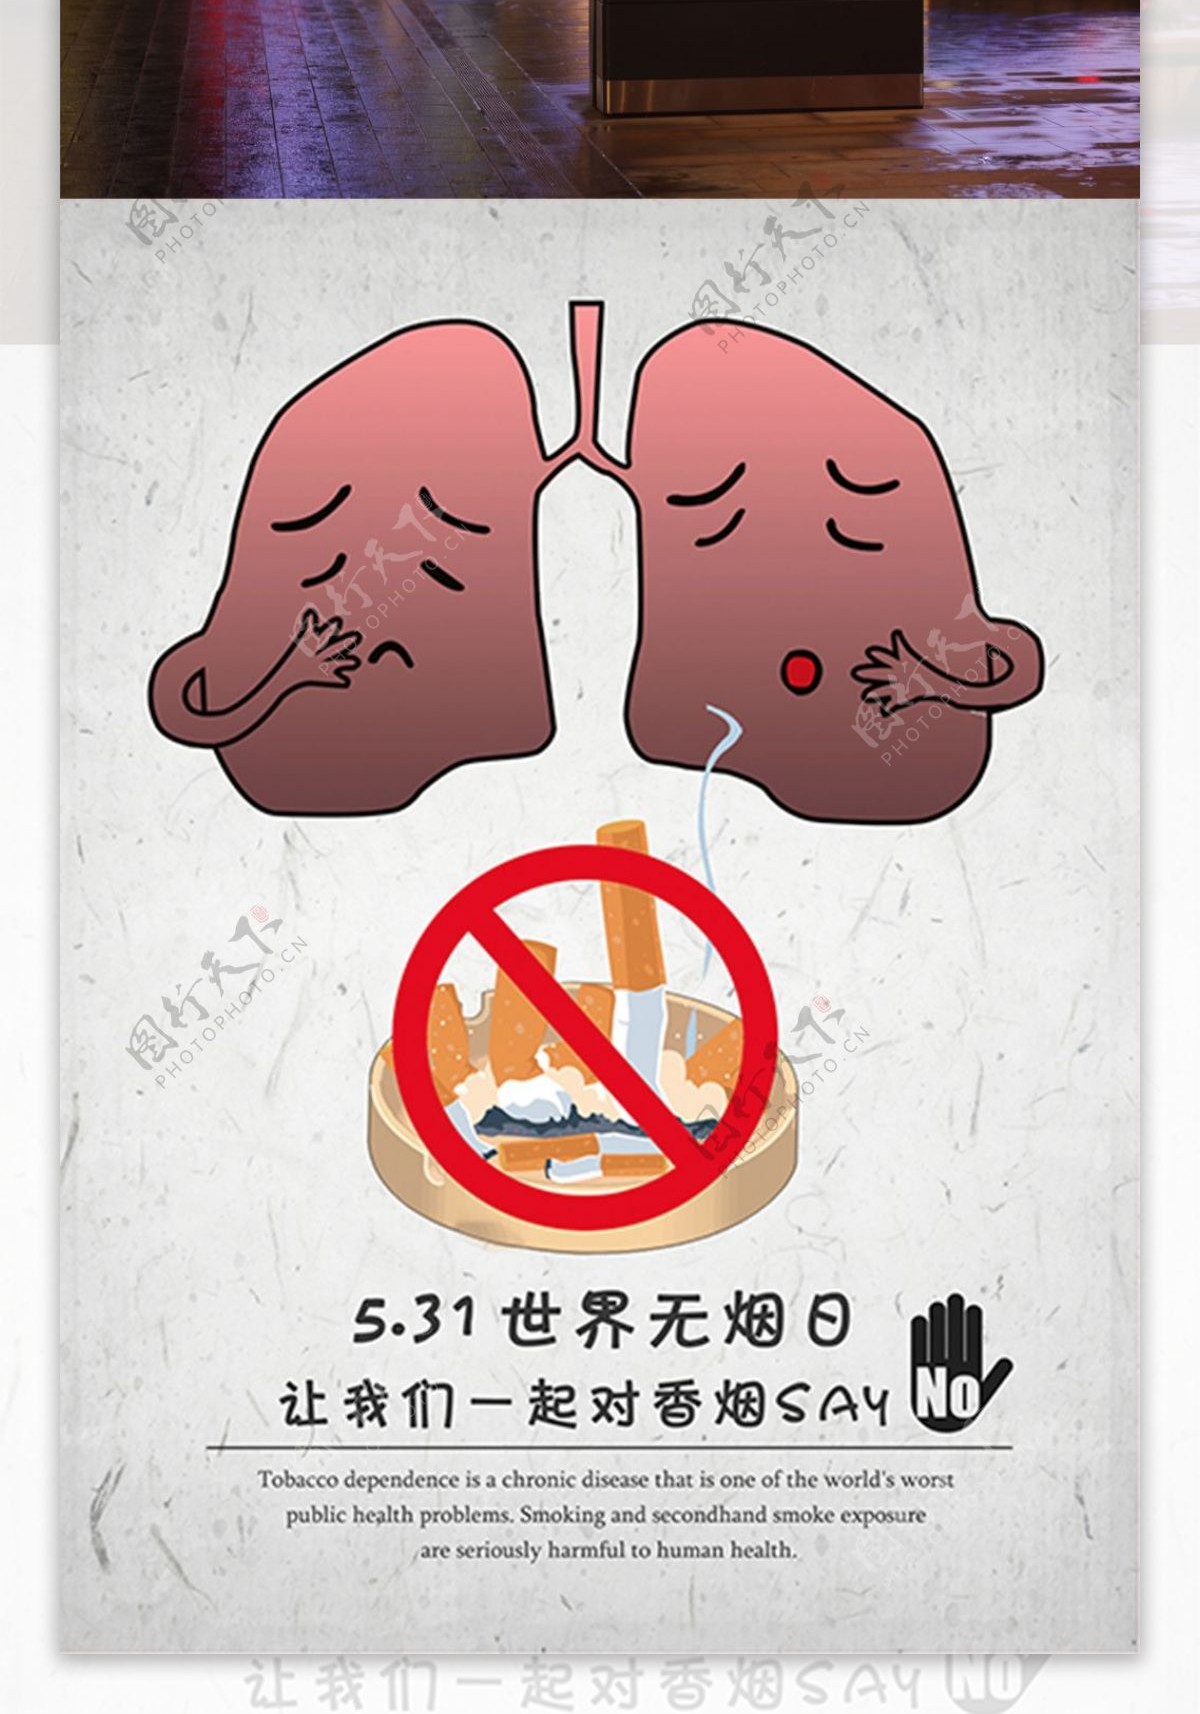 531世界无烟日创意海报设计